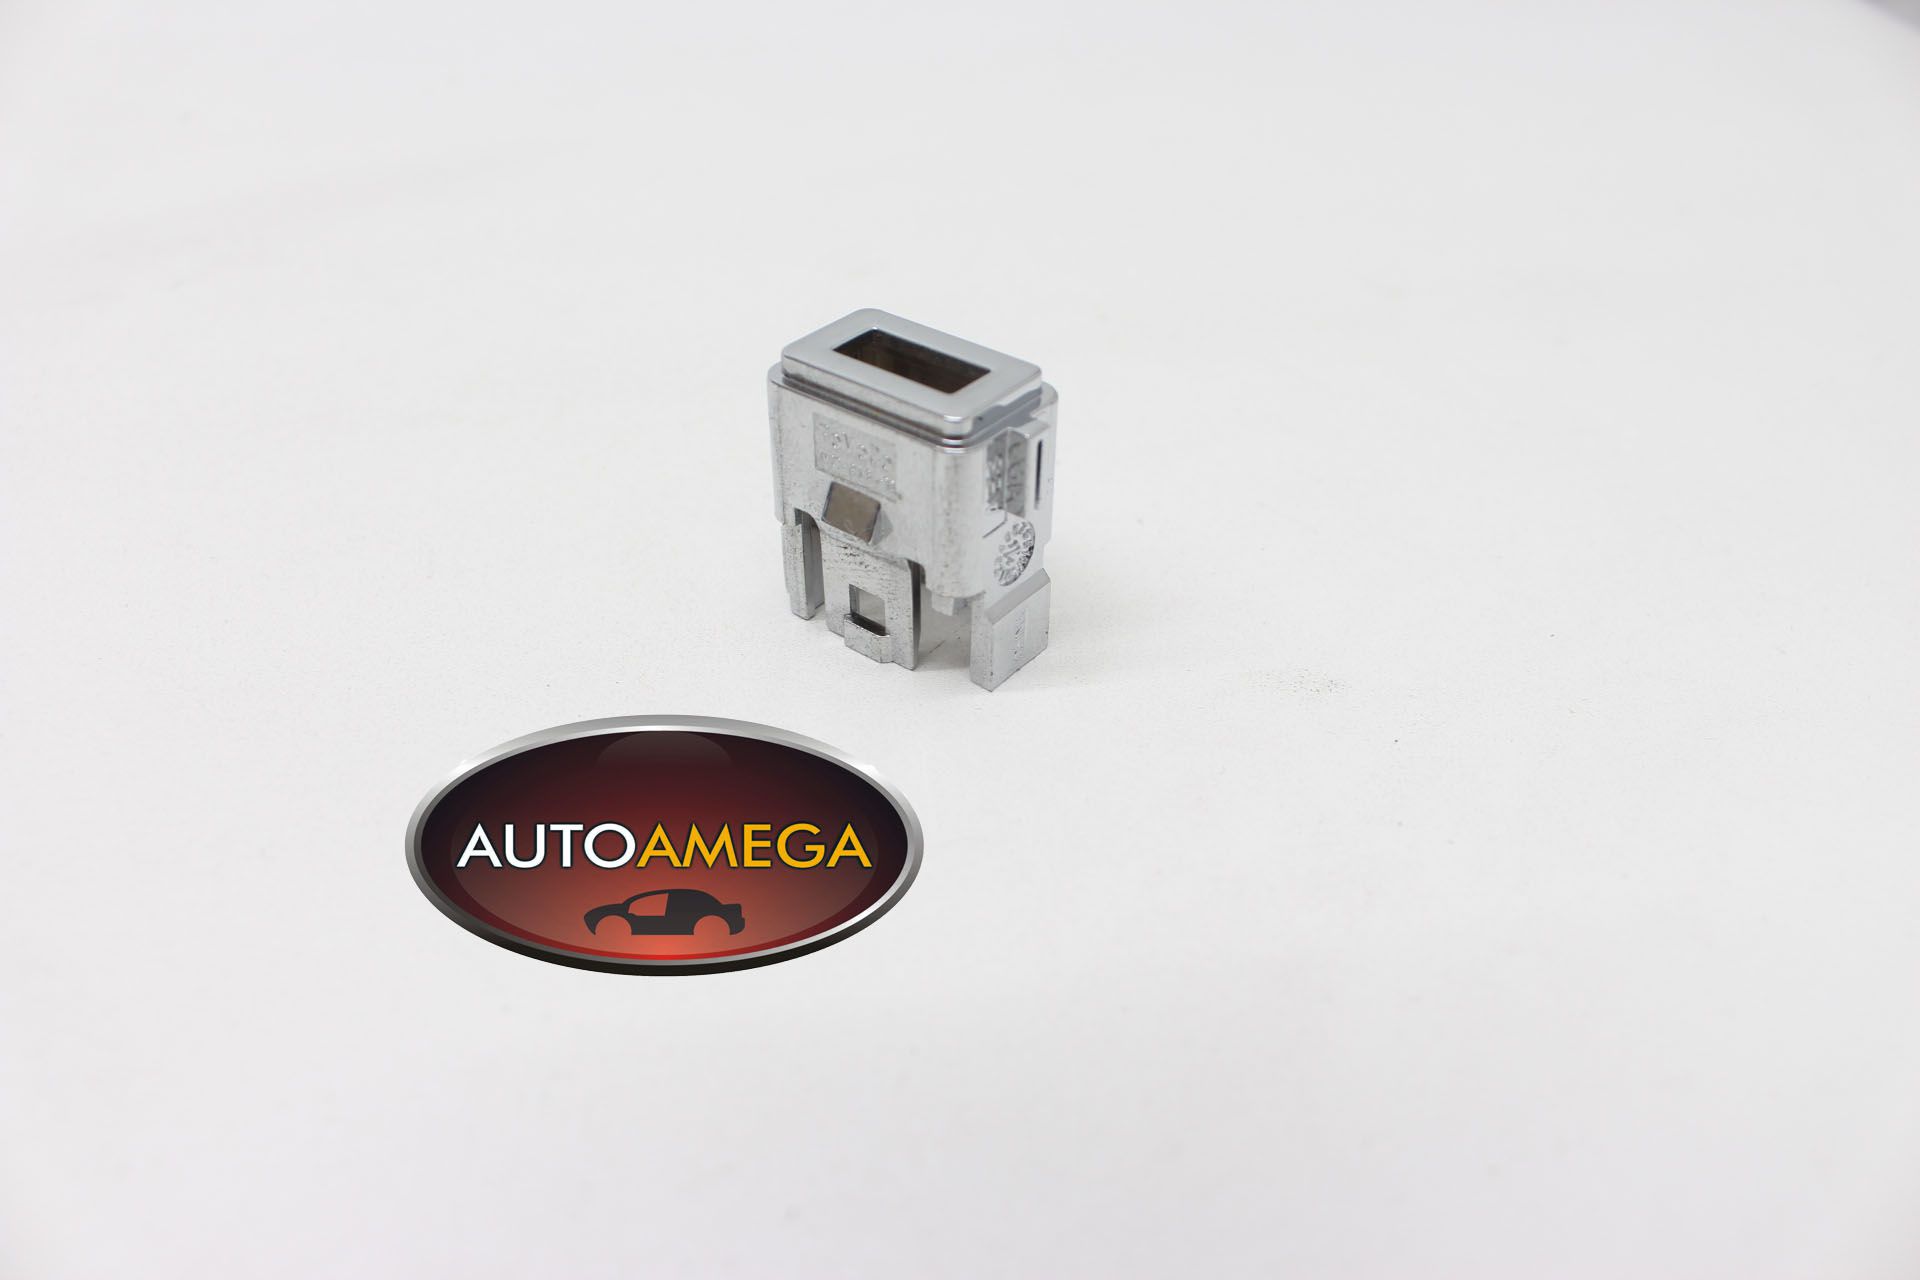 Capa do Conector USB Original Ford Ecosport 2013/